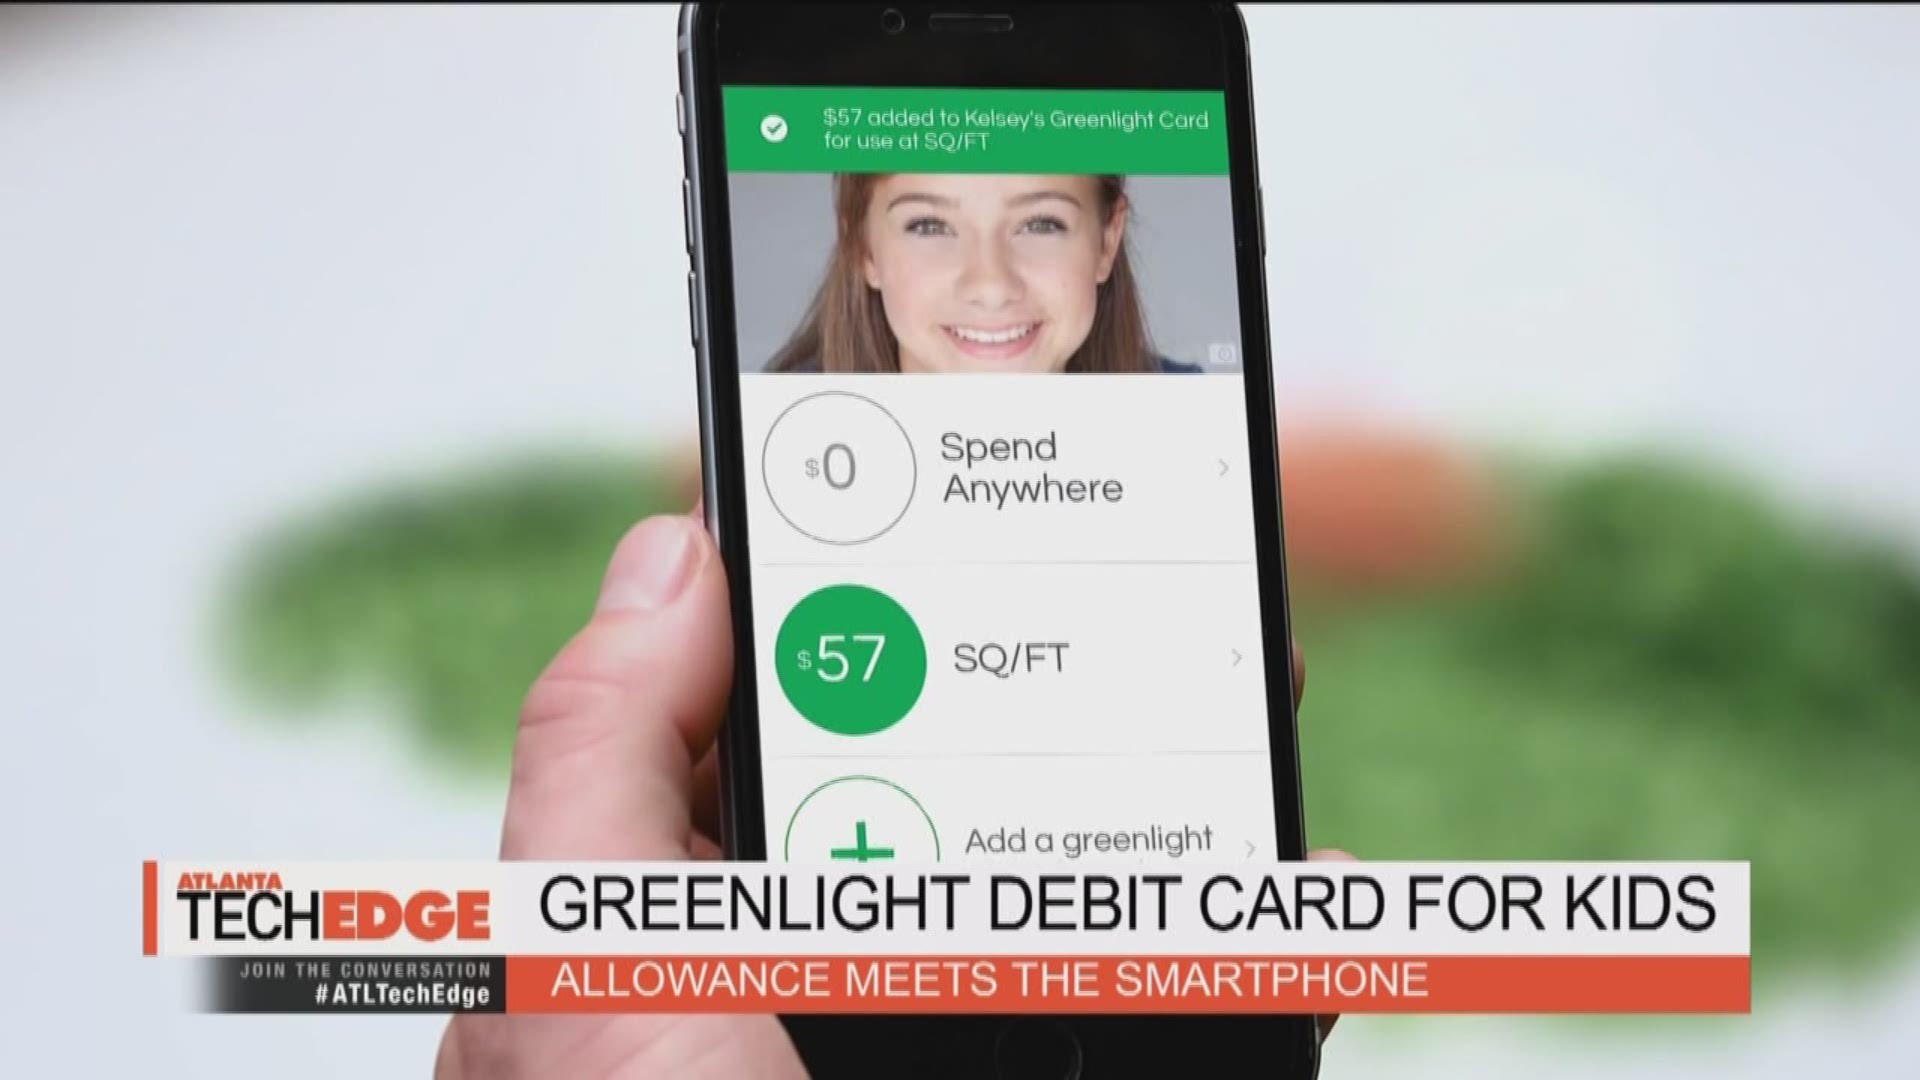 Greenlight debit card for kids